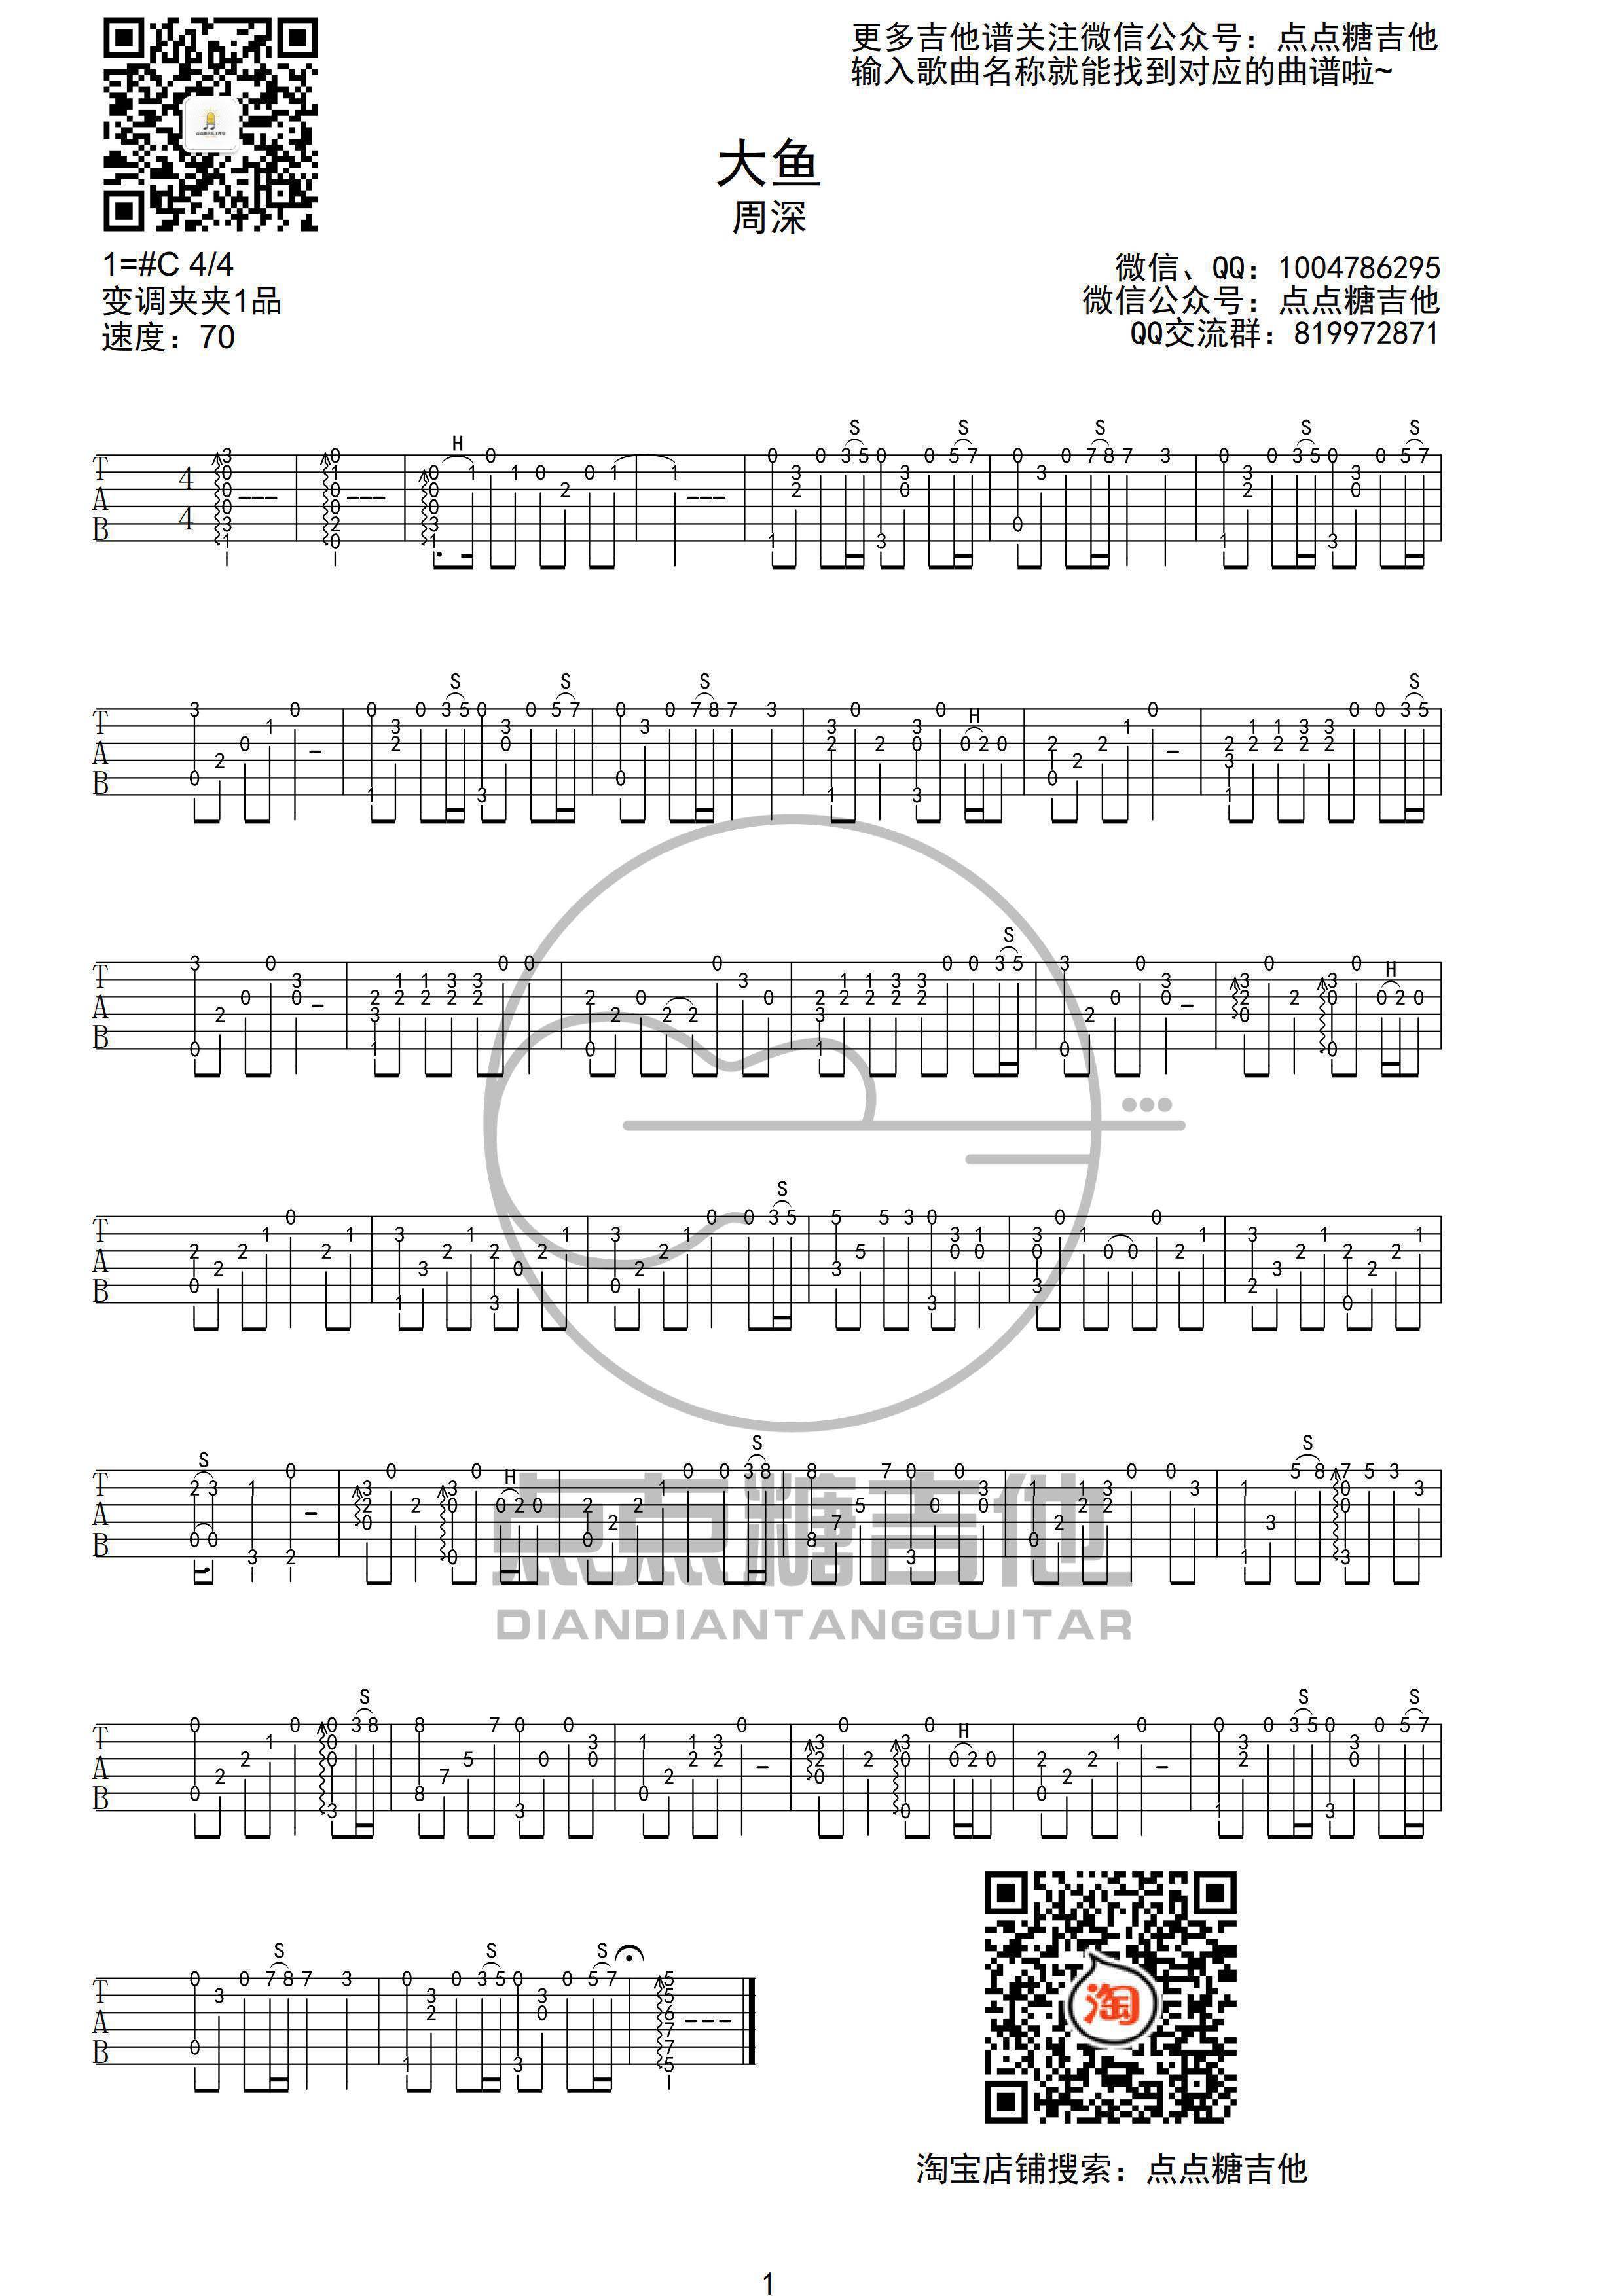 大鱼 (《大鱼海棠》印象曲 四合一吉他谱 木棉道琴行)吉他谱(PDF谱,四合一吉他谱,木棉道琴行,弹唱)_周深(卡布叻 / 卡布)